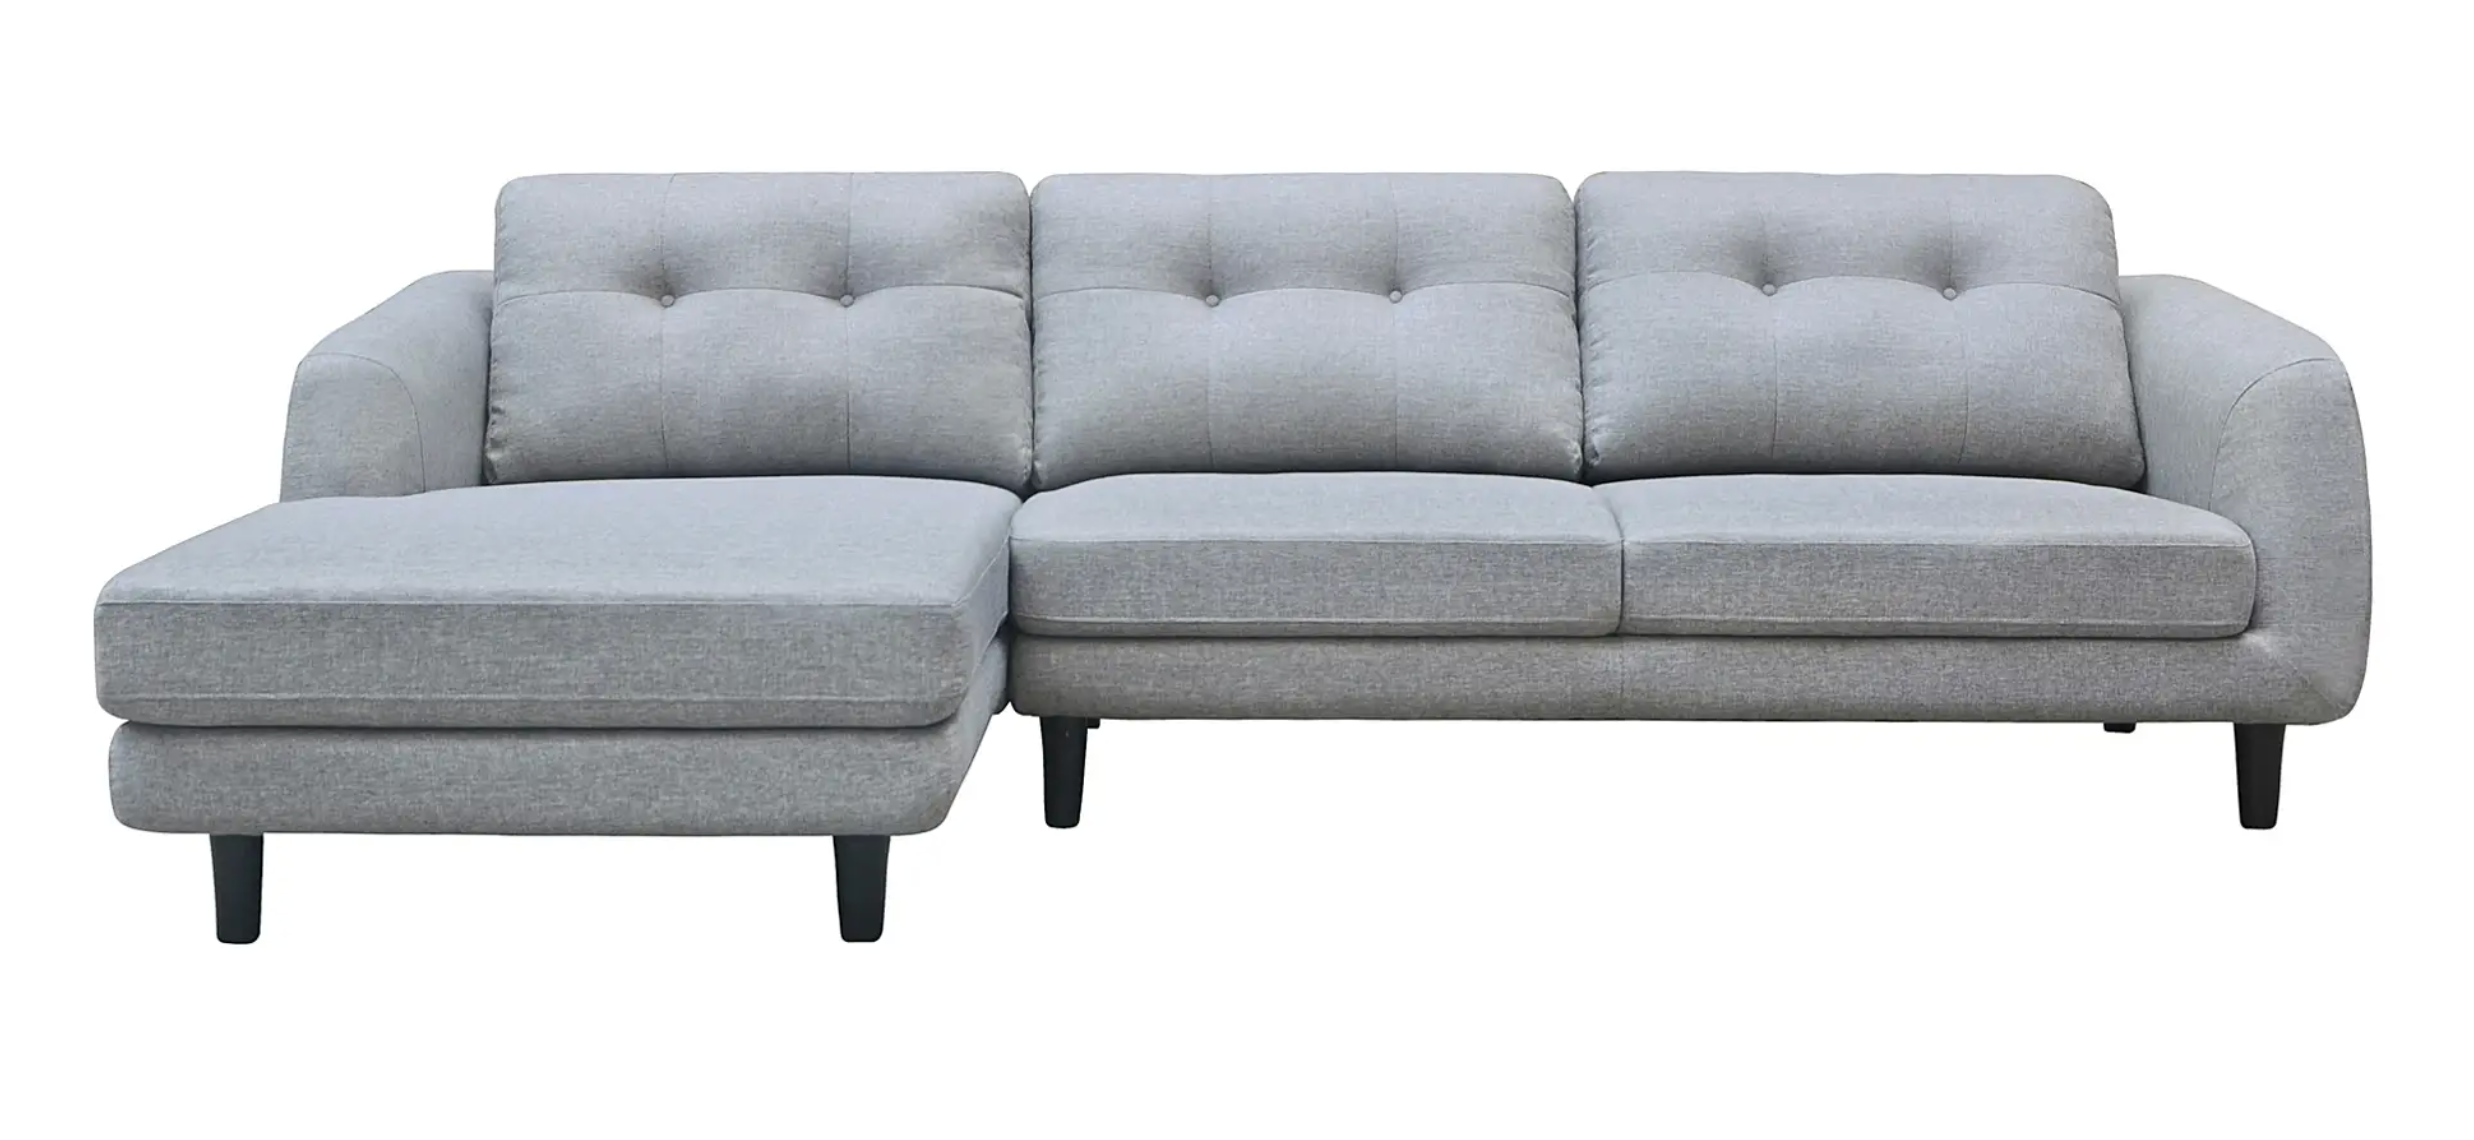 Canapé-lit de belagio avec chaises orientées vers gauche